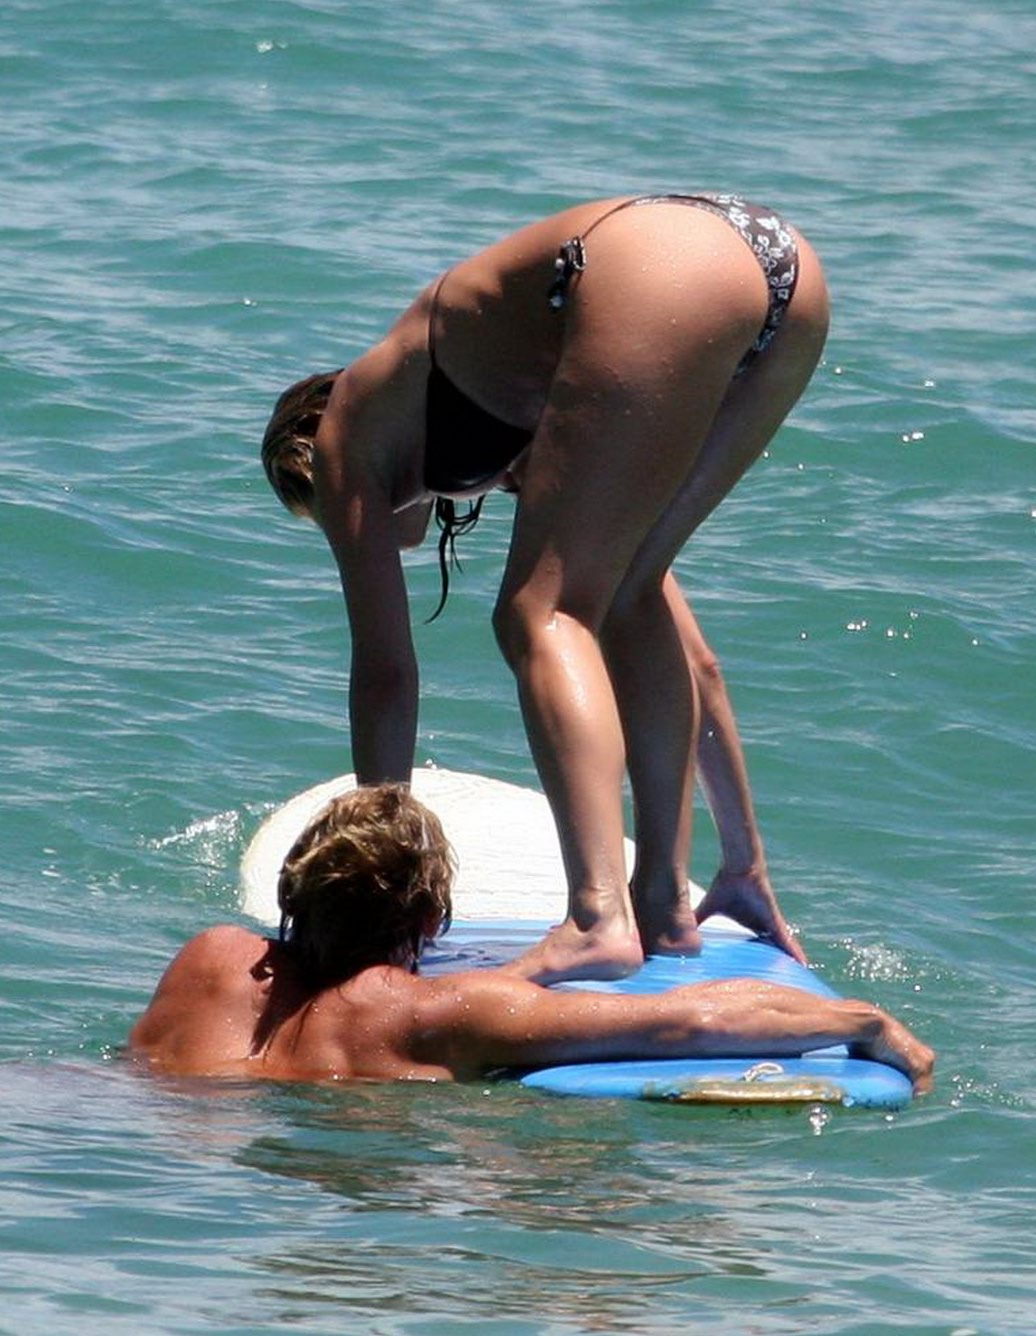 [Jennifer+Aniston+bikini+in+bali+2007jeniferanistonbikini.jpg]